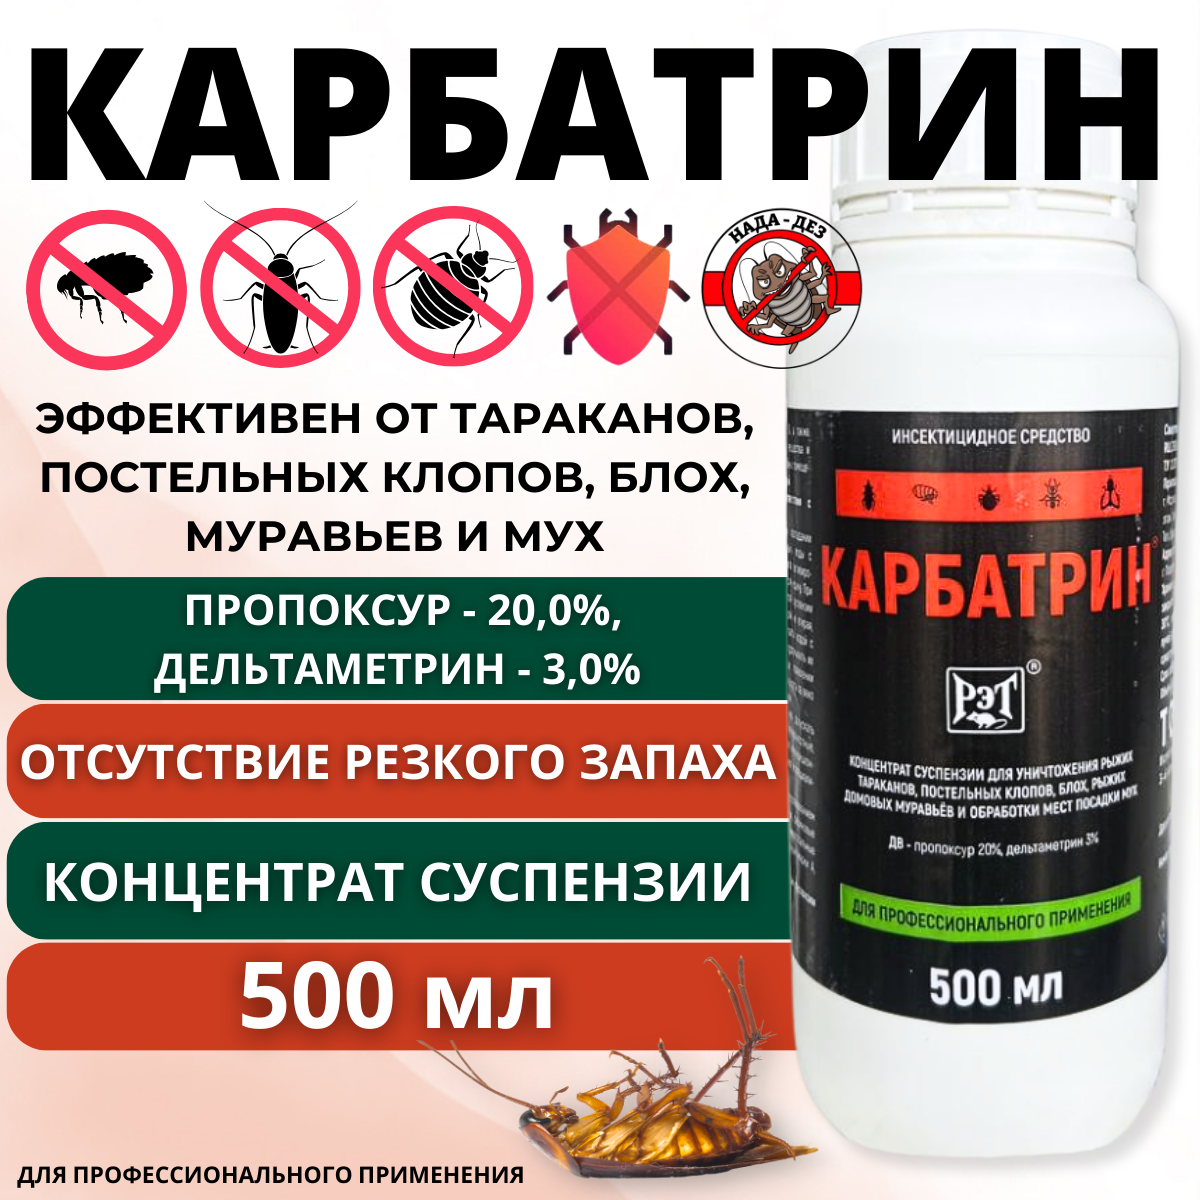 Карбатрин 500 мл средство от тараканов и других насекомых